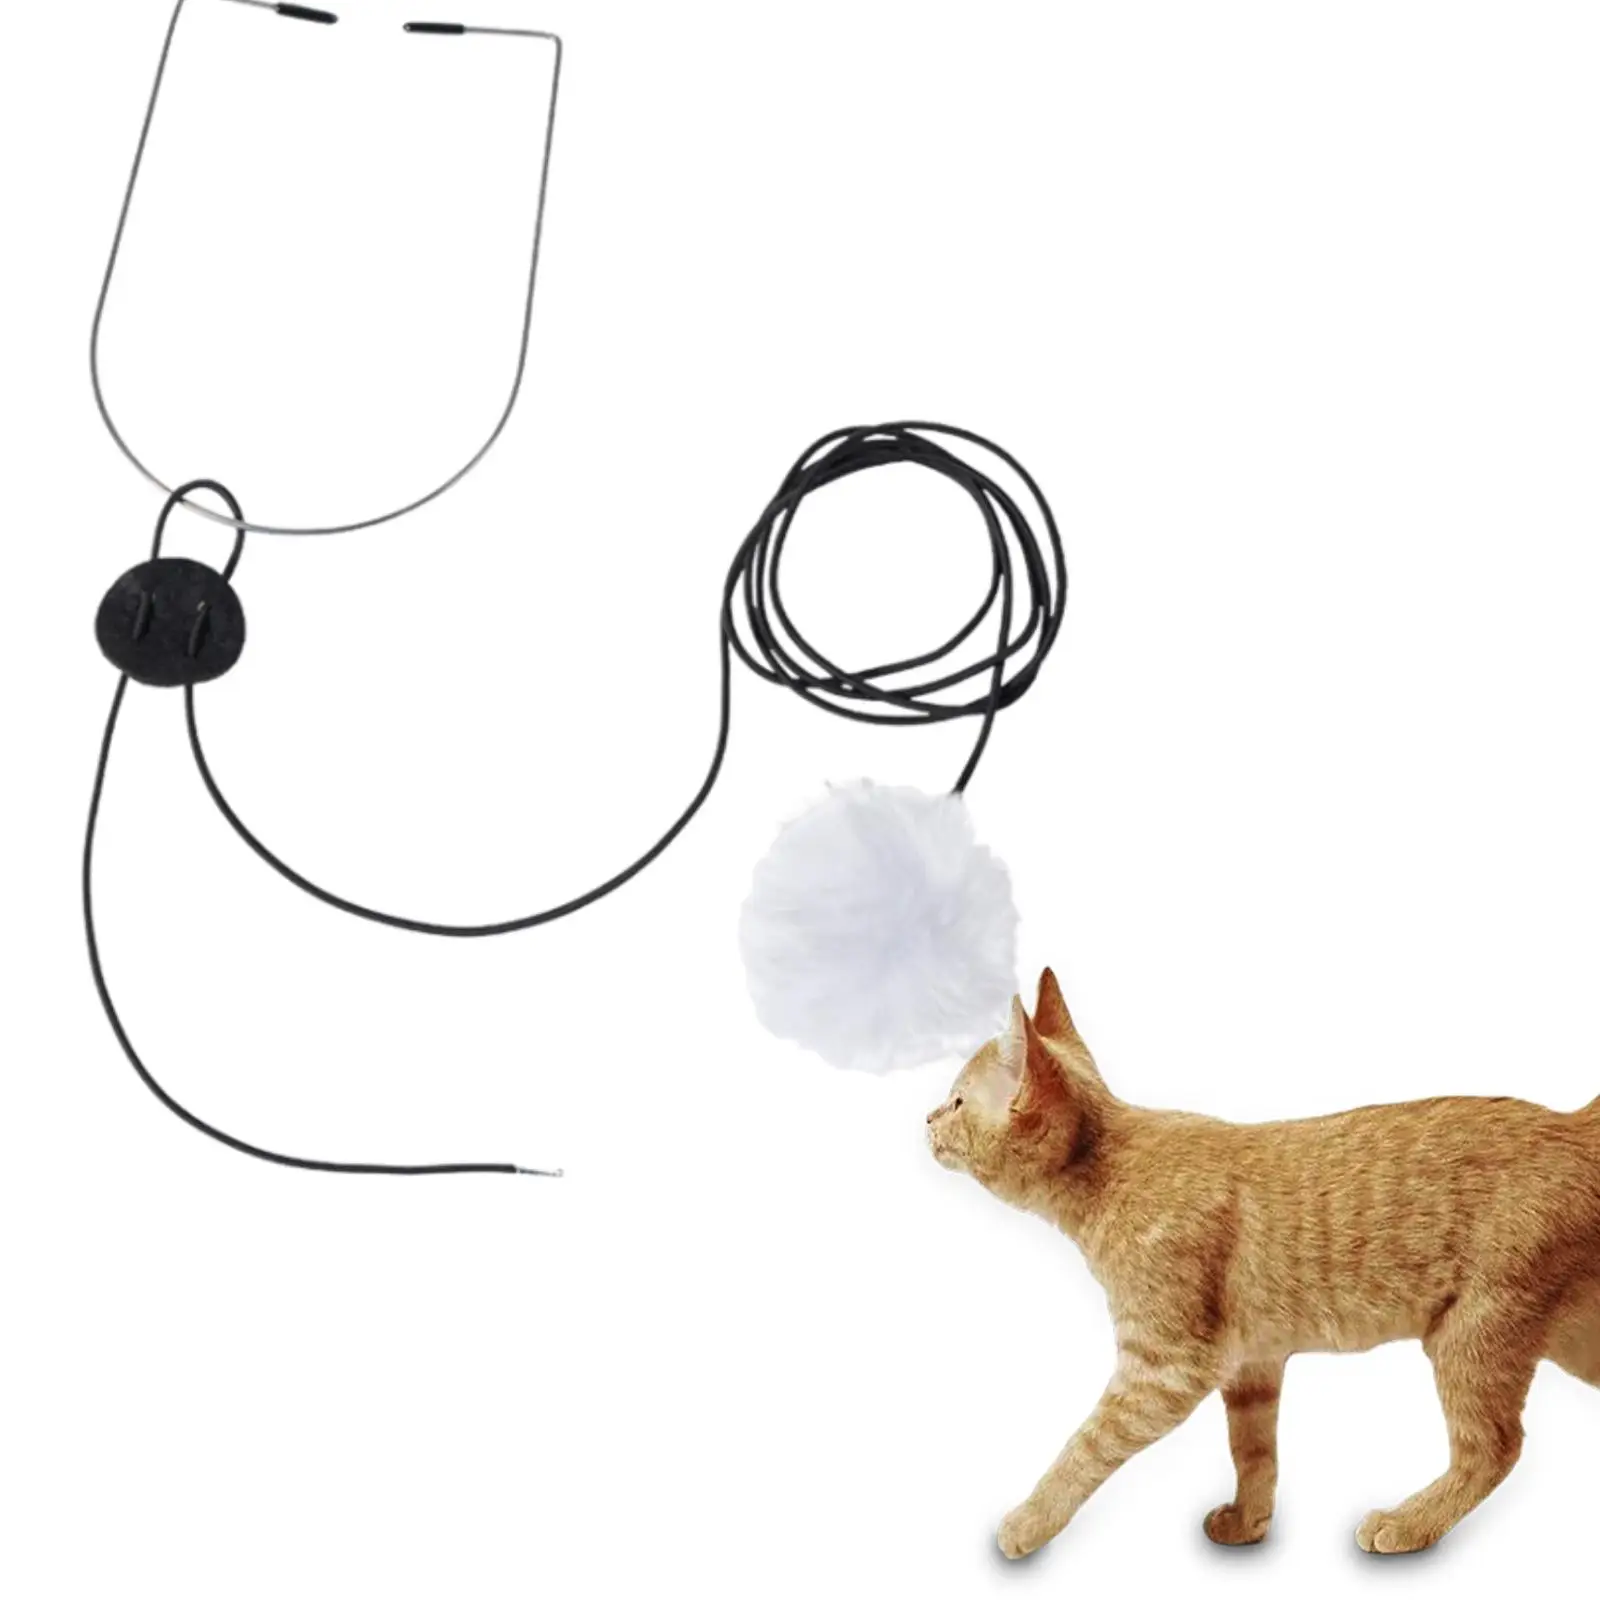 Интерактивные игрушки для кошек, зоотовары, Выдвижные подвесные игрушки для кошек, палочка-дразнилка для кошек, избавляющая домашних кошек от скуки. Изображение 1